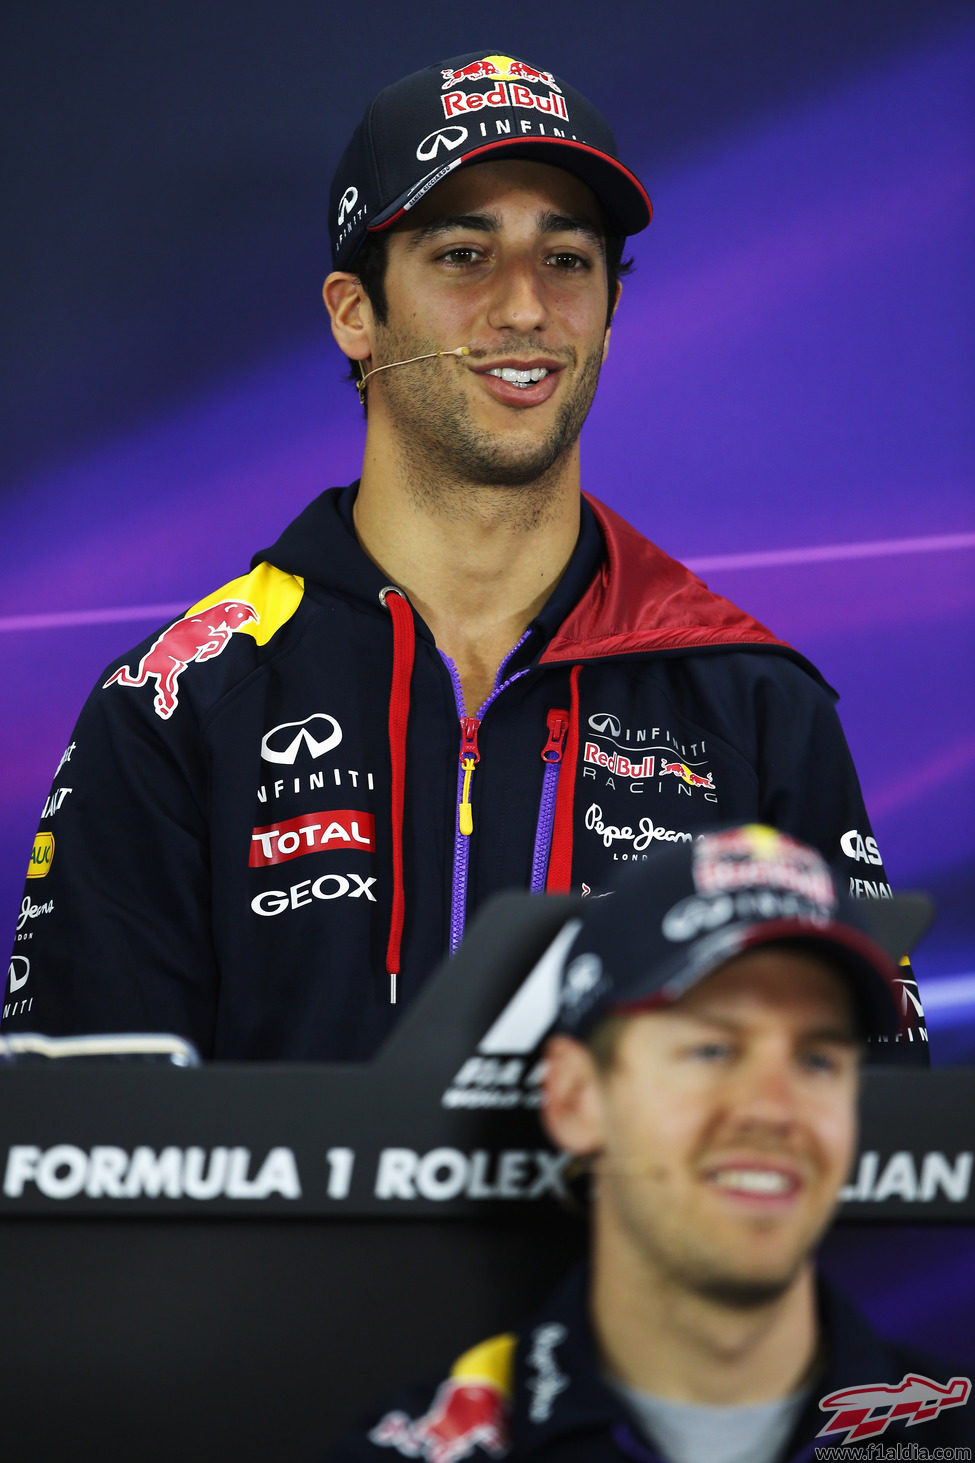 Daniel Ricciardo y Sebastian Vettel en la rueda de prensa de pilotos de la FIA